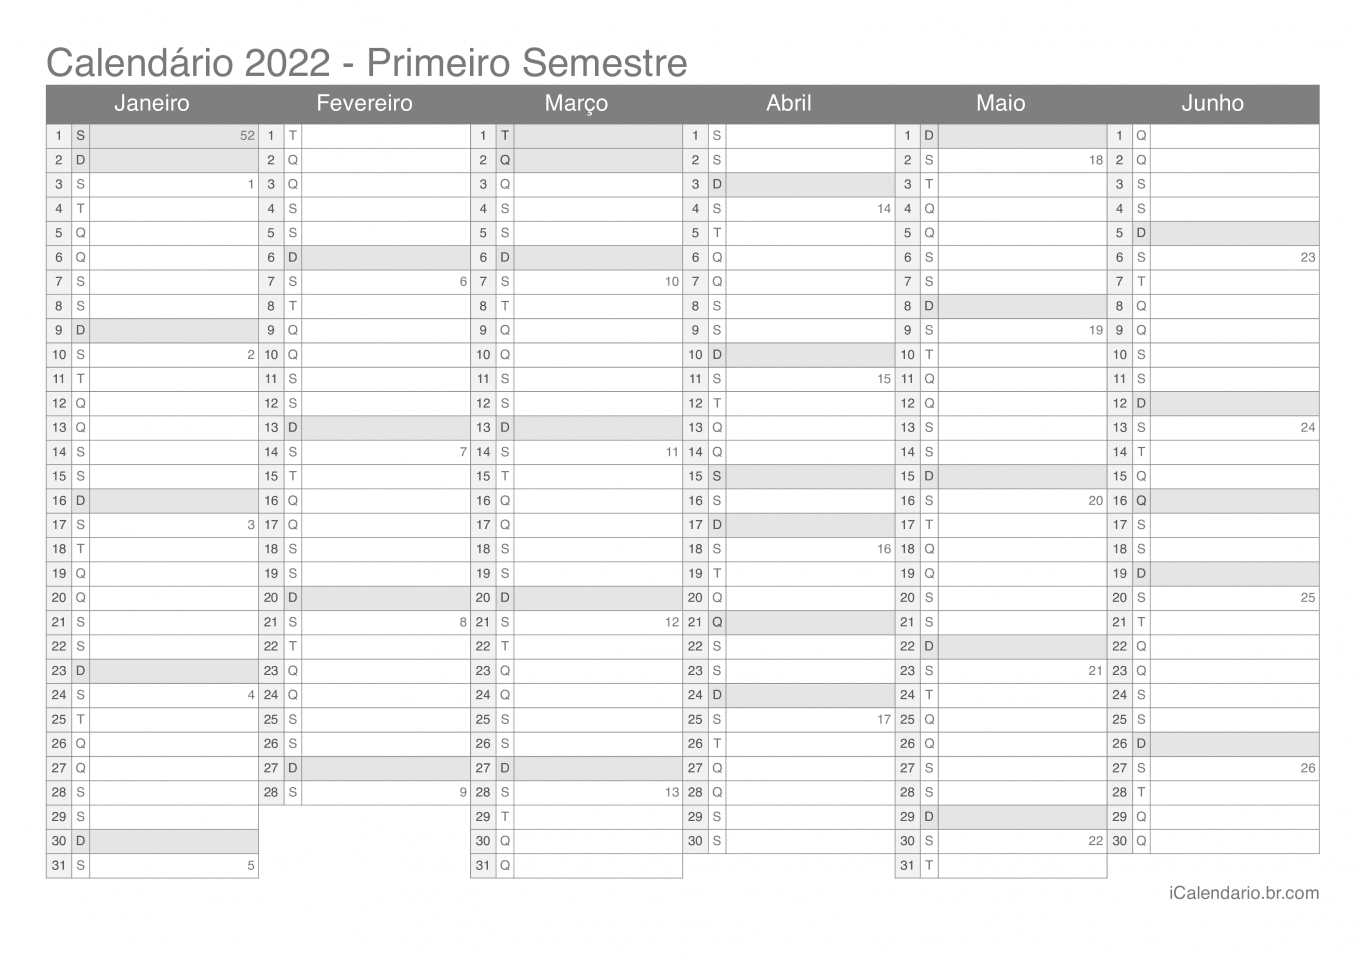 Calendário por semestre com números da semana 2022